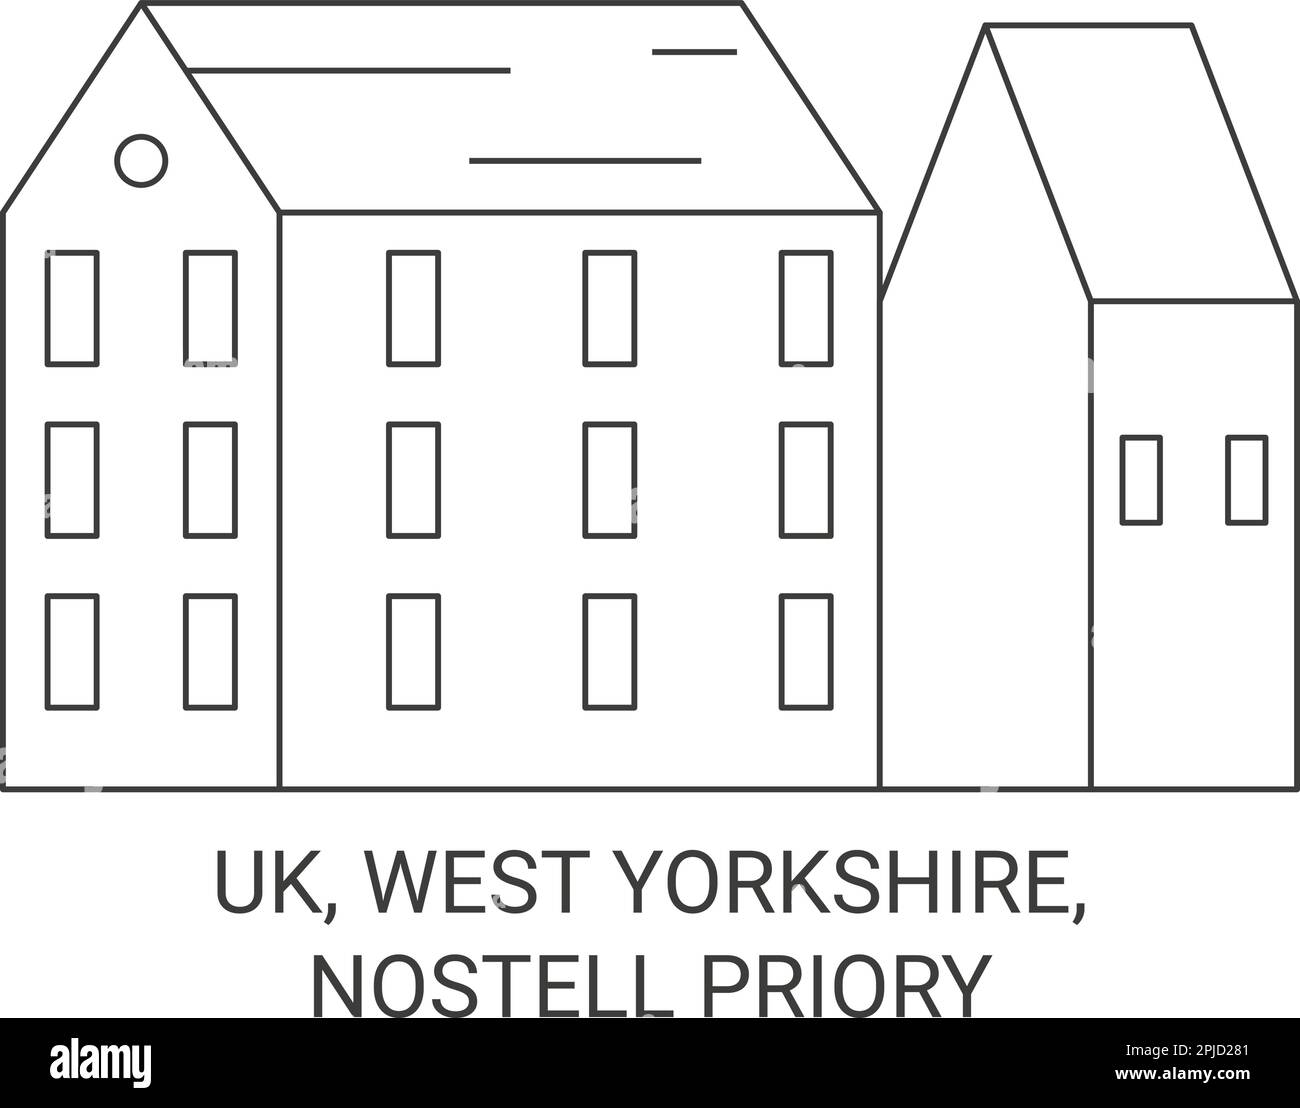 Uk, West Yorkshire, Nostell Priory travel landmark vector illustration Stock Vector